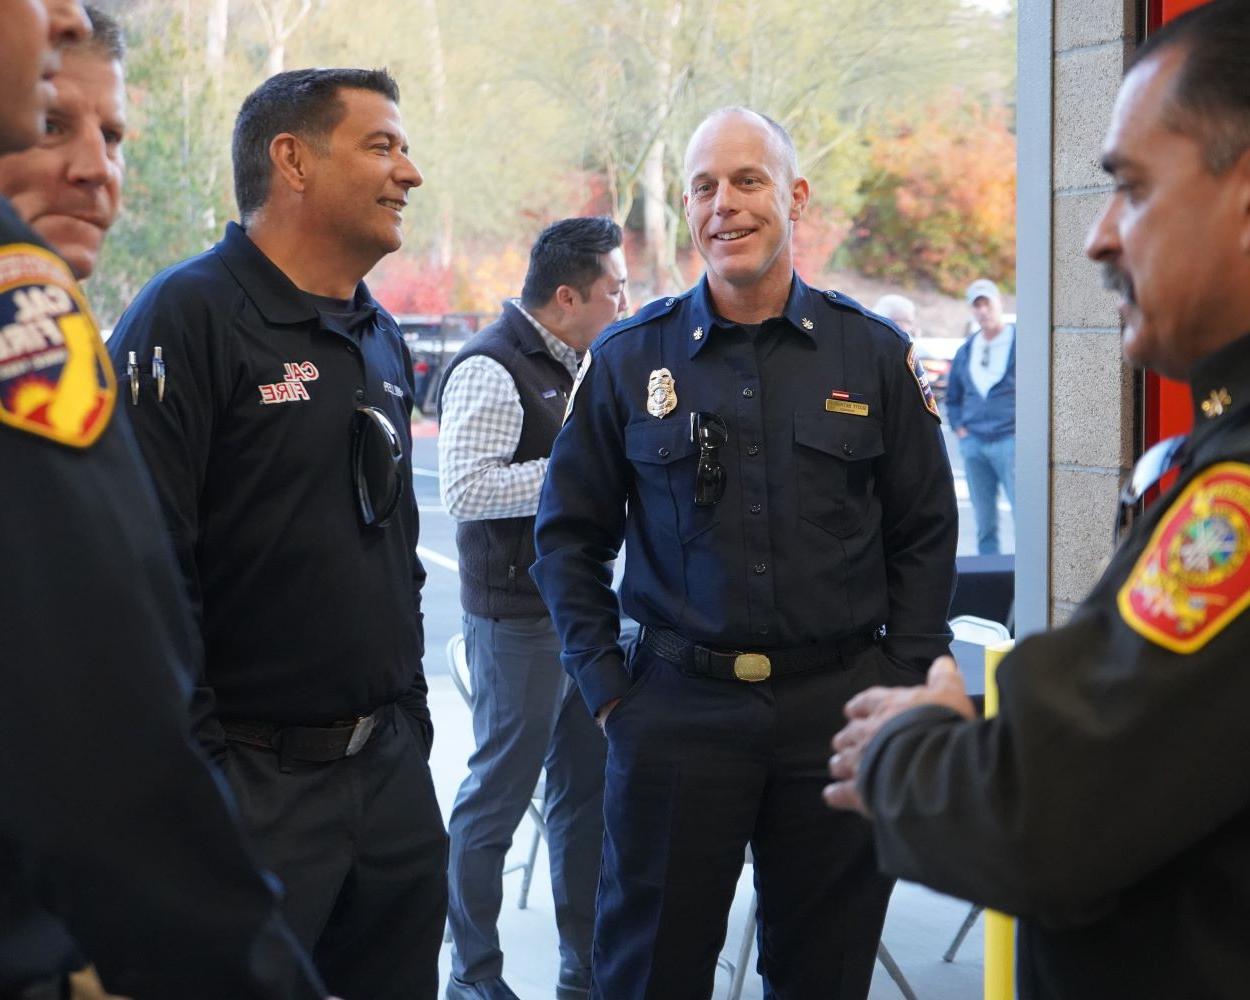 Fire Academy Alumni Attend Sneak Peek of Public Safety Training Center